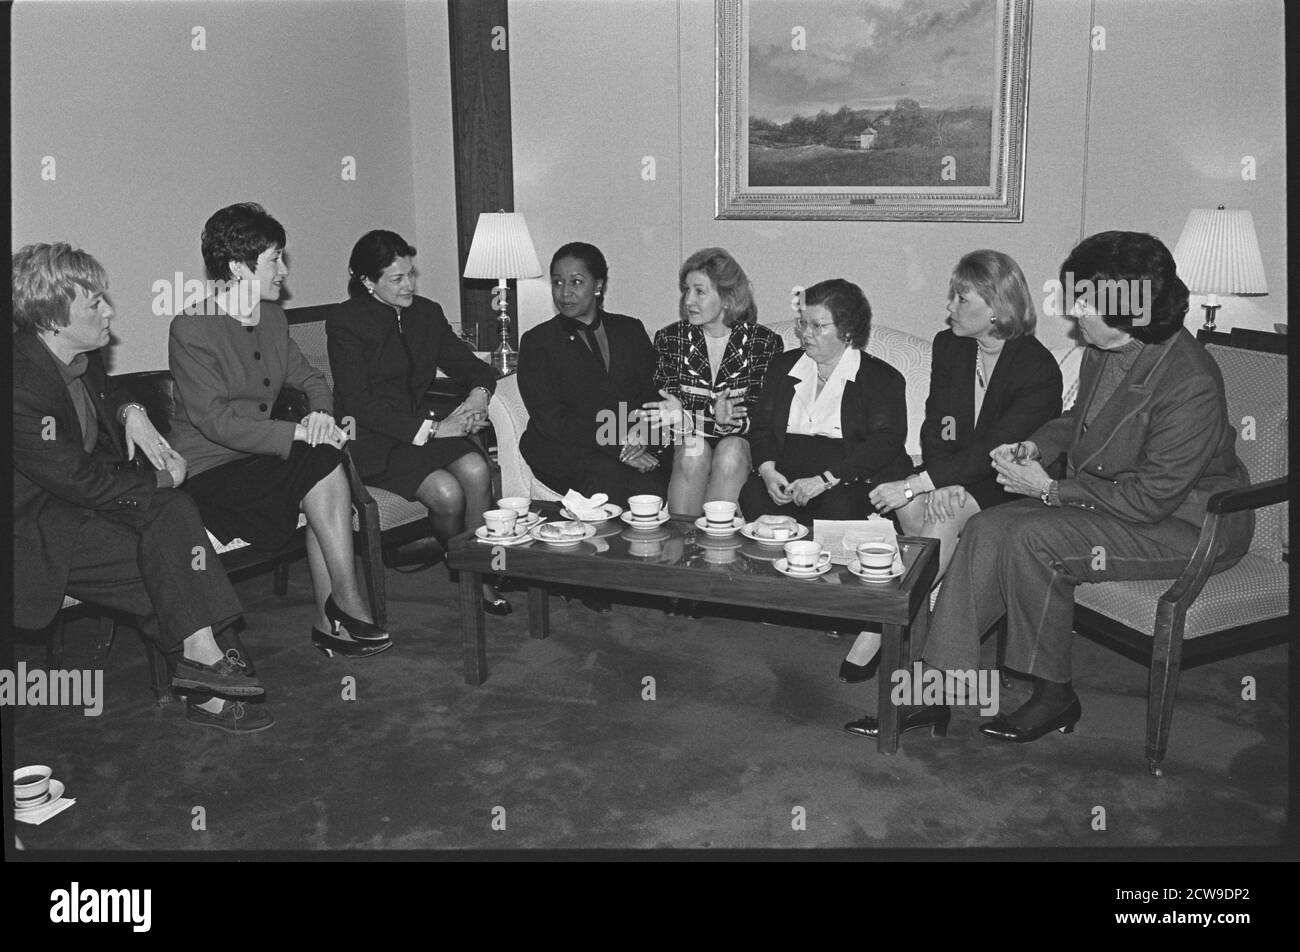 Retrato formal de las senadoras de los Estados Unidos sentadas alrededor de una mesa de café (de izquierda a derecha): Patty Murray (D-WA), Susan Collins (R-ME), Olympia Snowe (R-ME), Carol Moseley-Braun (D-IL), Kay Bailey Hutchinson (R-TX), Barbara Mikulski (D-MD), Mary Landristein (D-Feeu), Washington), D.C., 1997-D.C., D.C., D.C., D.C., D.C., D.C., D.C., D.C., D.C., D.C., D. (Foto de Maureen Keating/CQ Roll Call Photograph Collection/imágenes de la vendimia de la RBM) Foto de stock